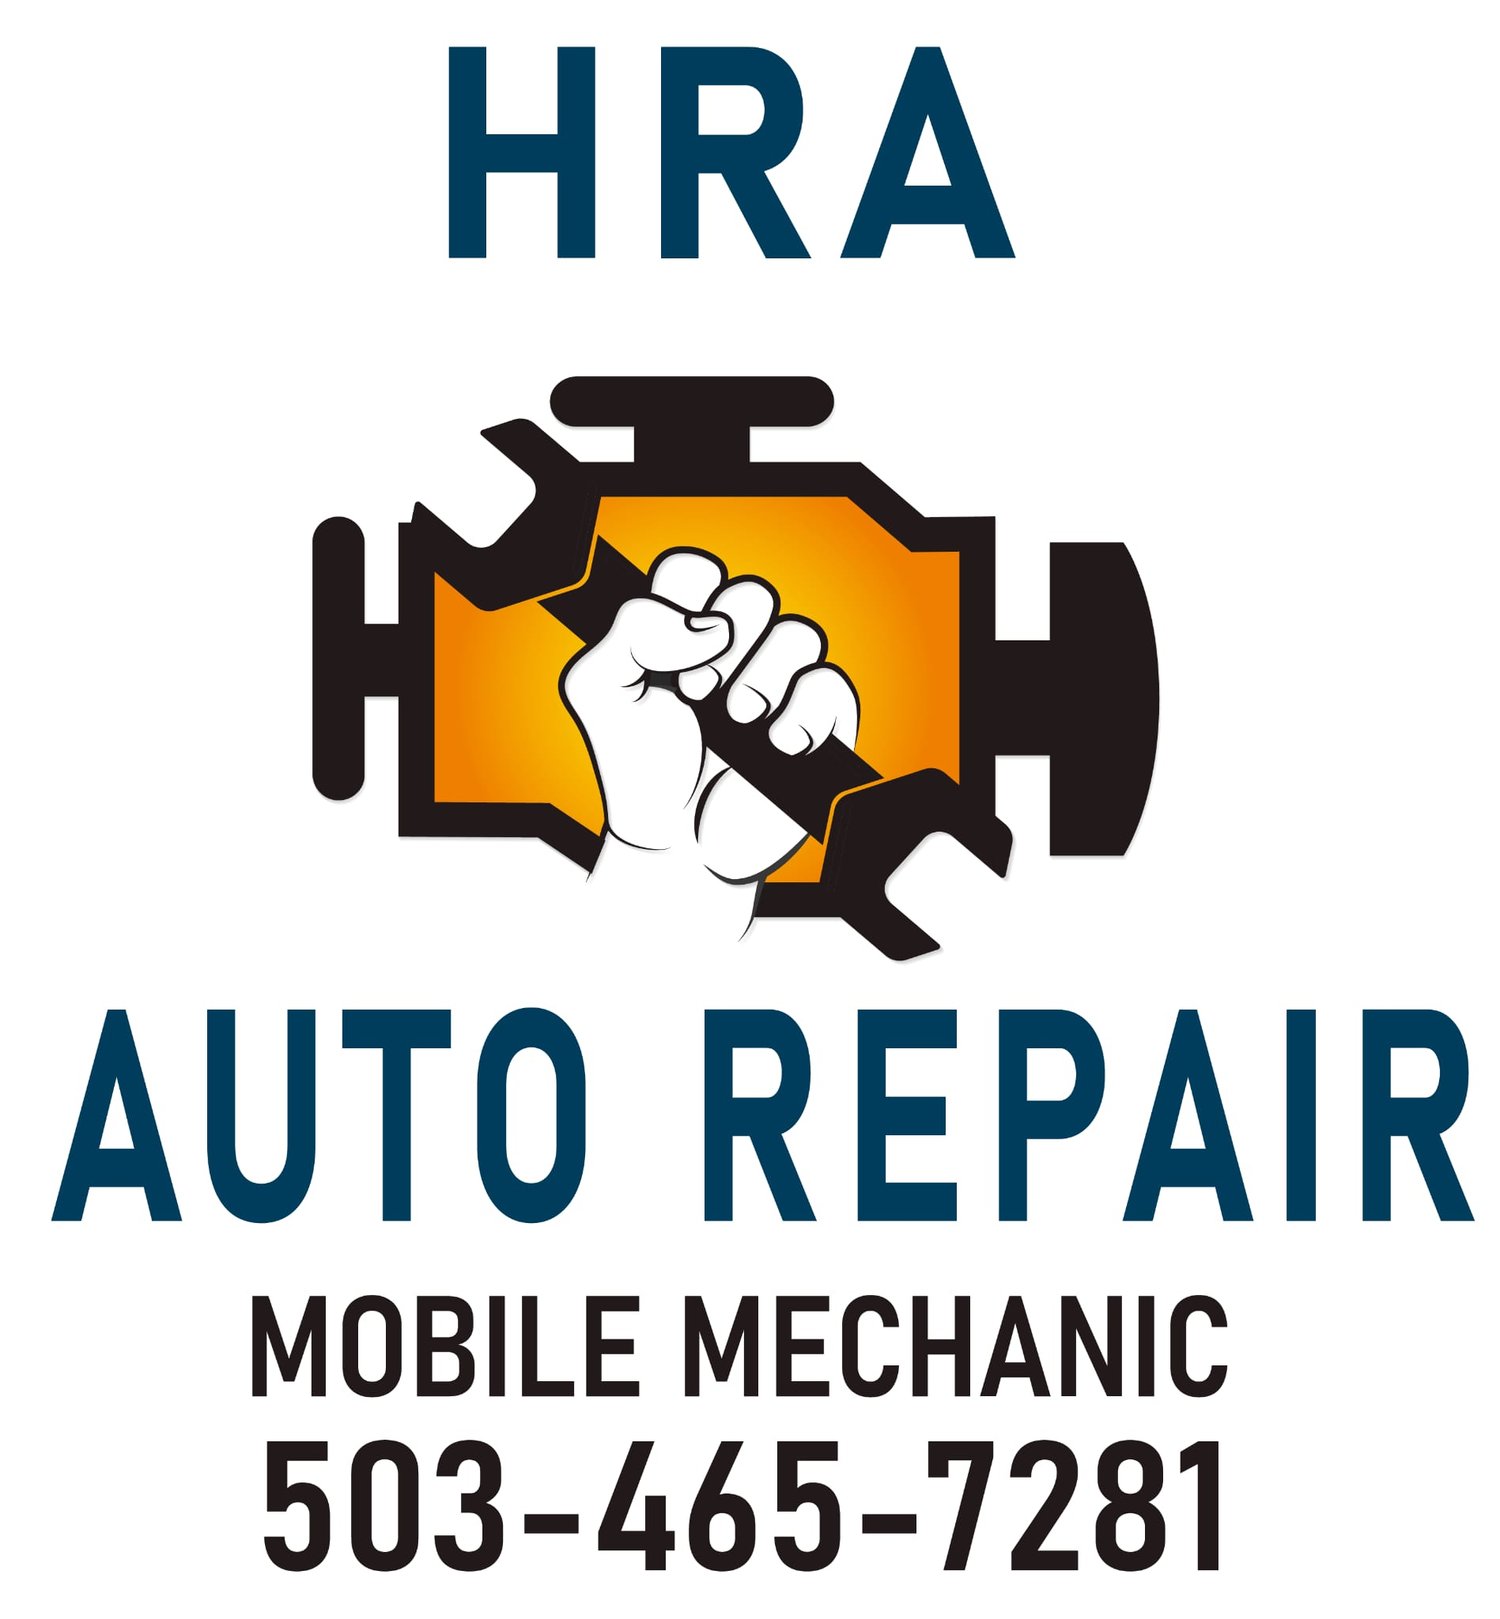 HRA Auto Repair, LLC